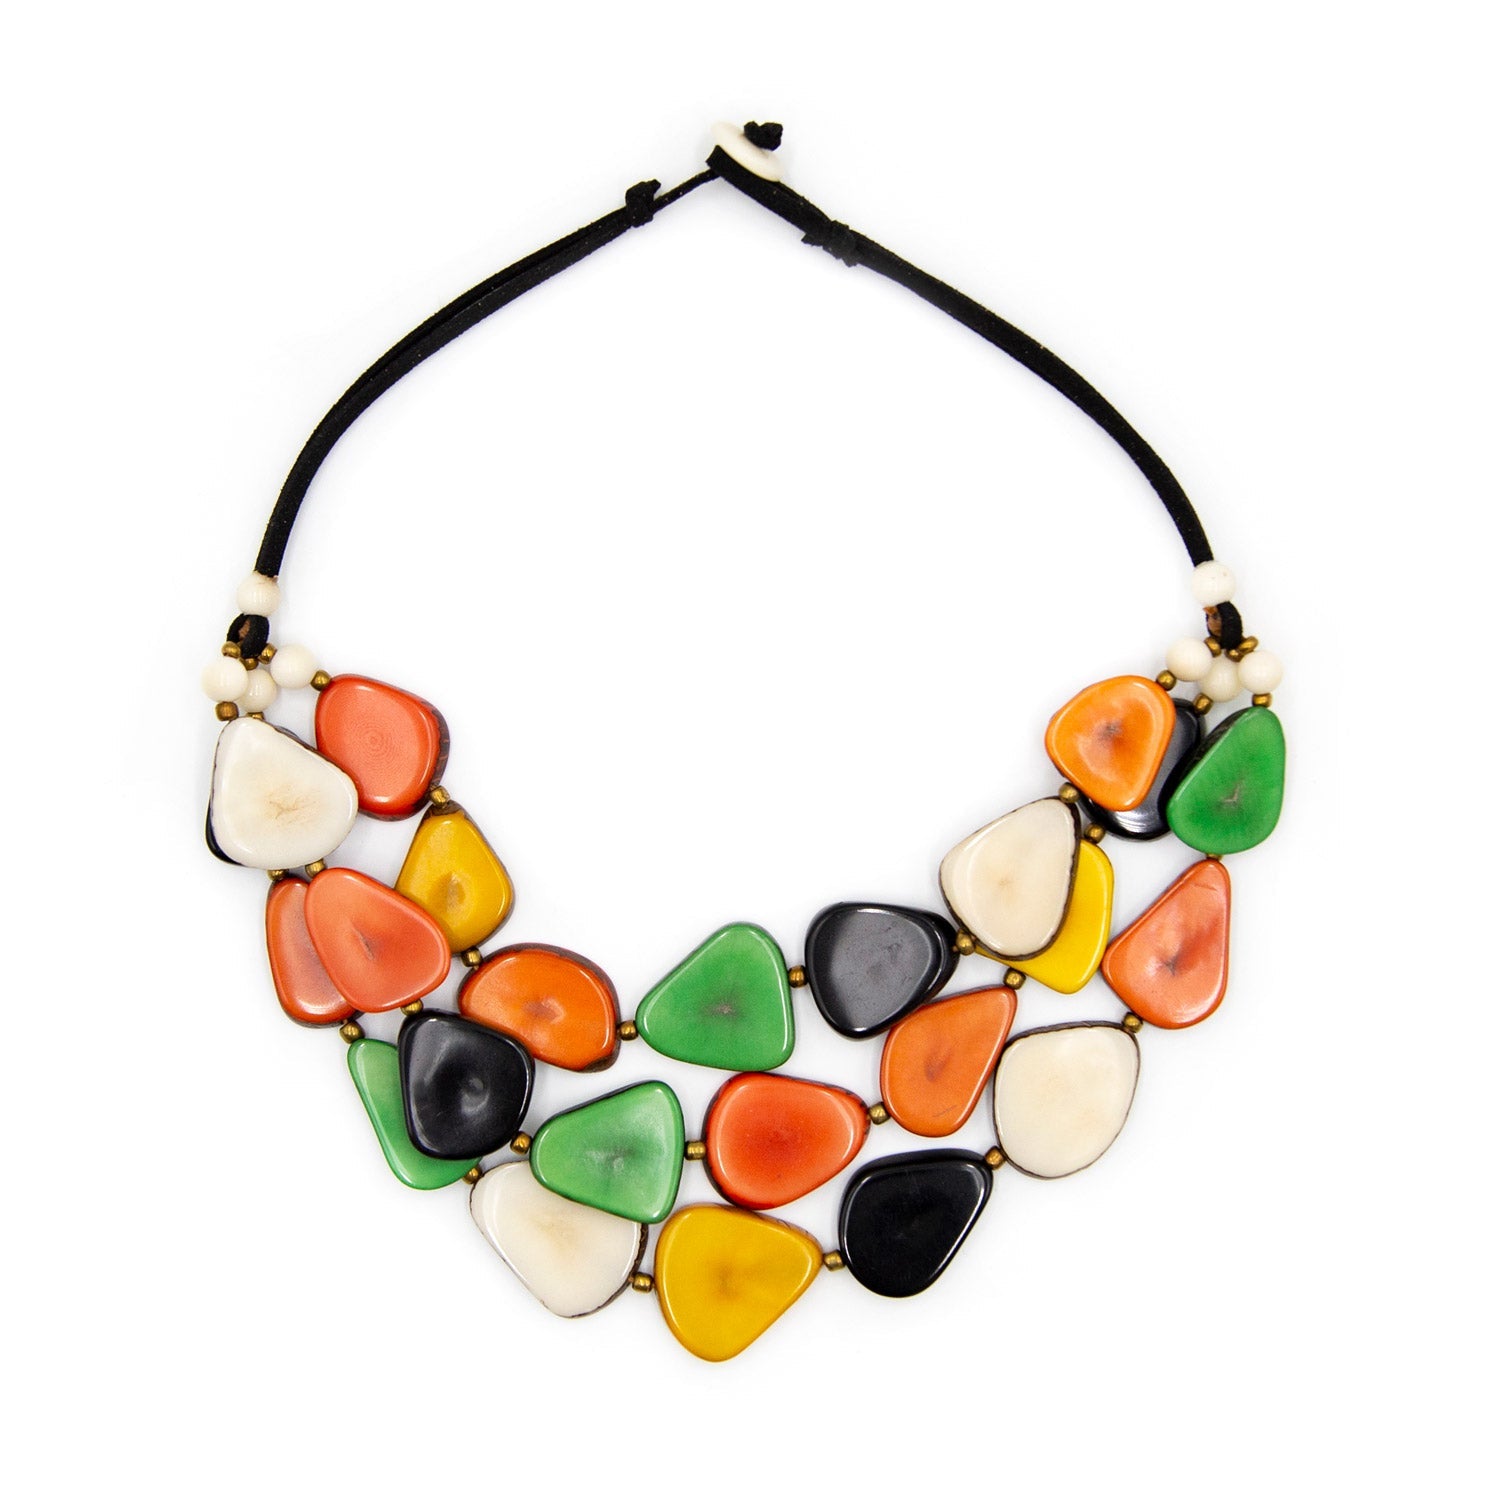 Tagua Jewelry "Alma" Necklace in Multicolor